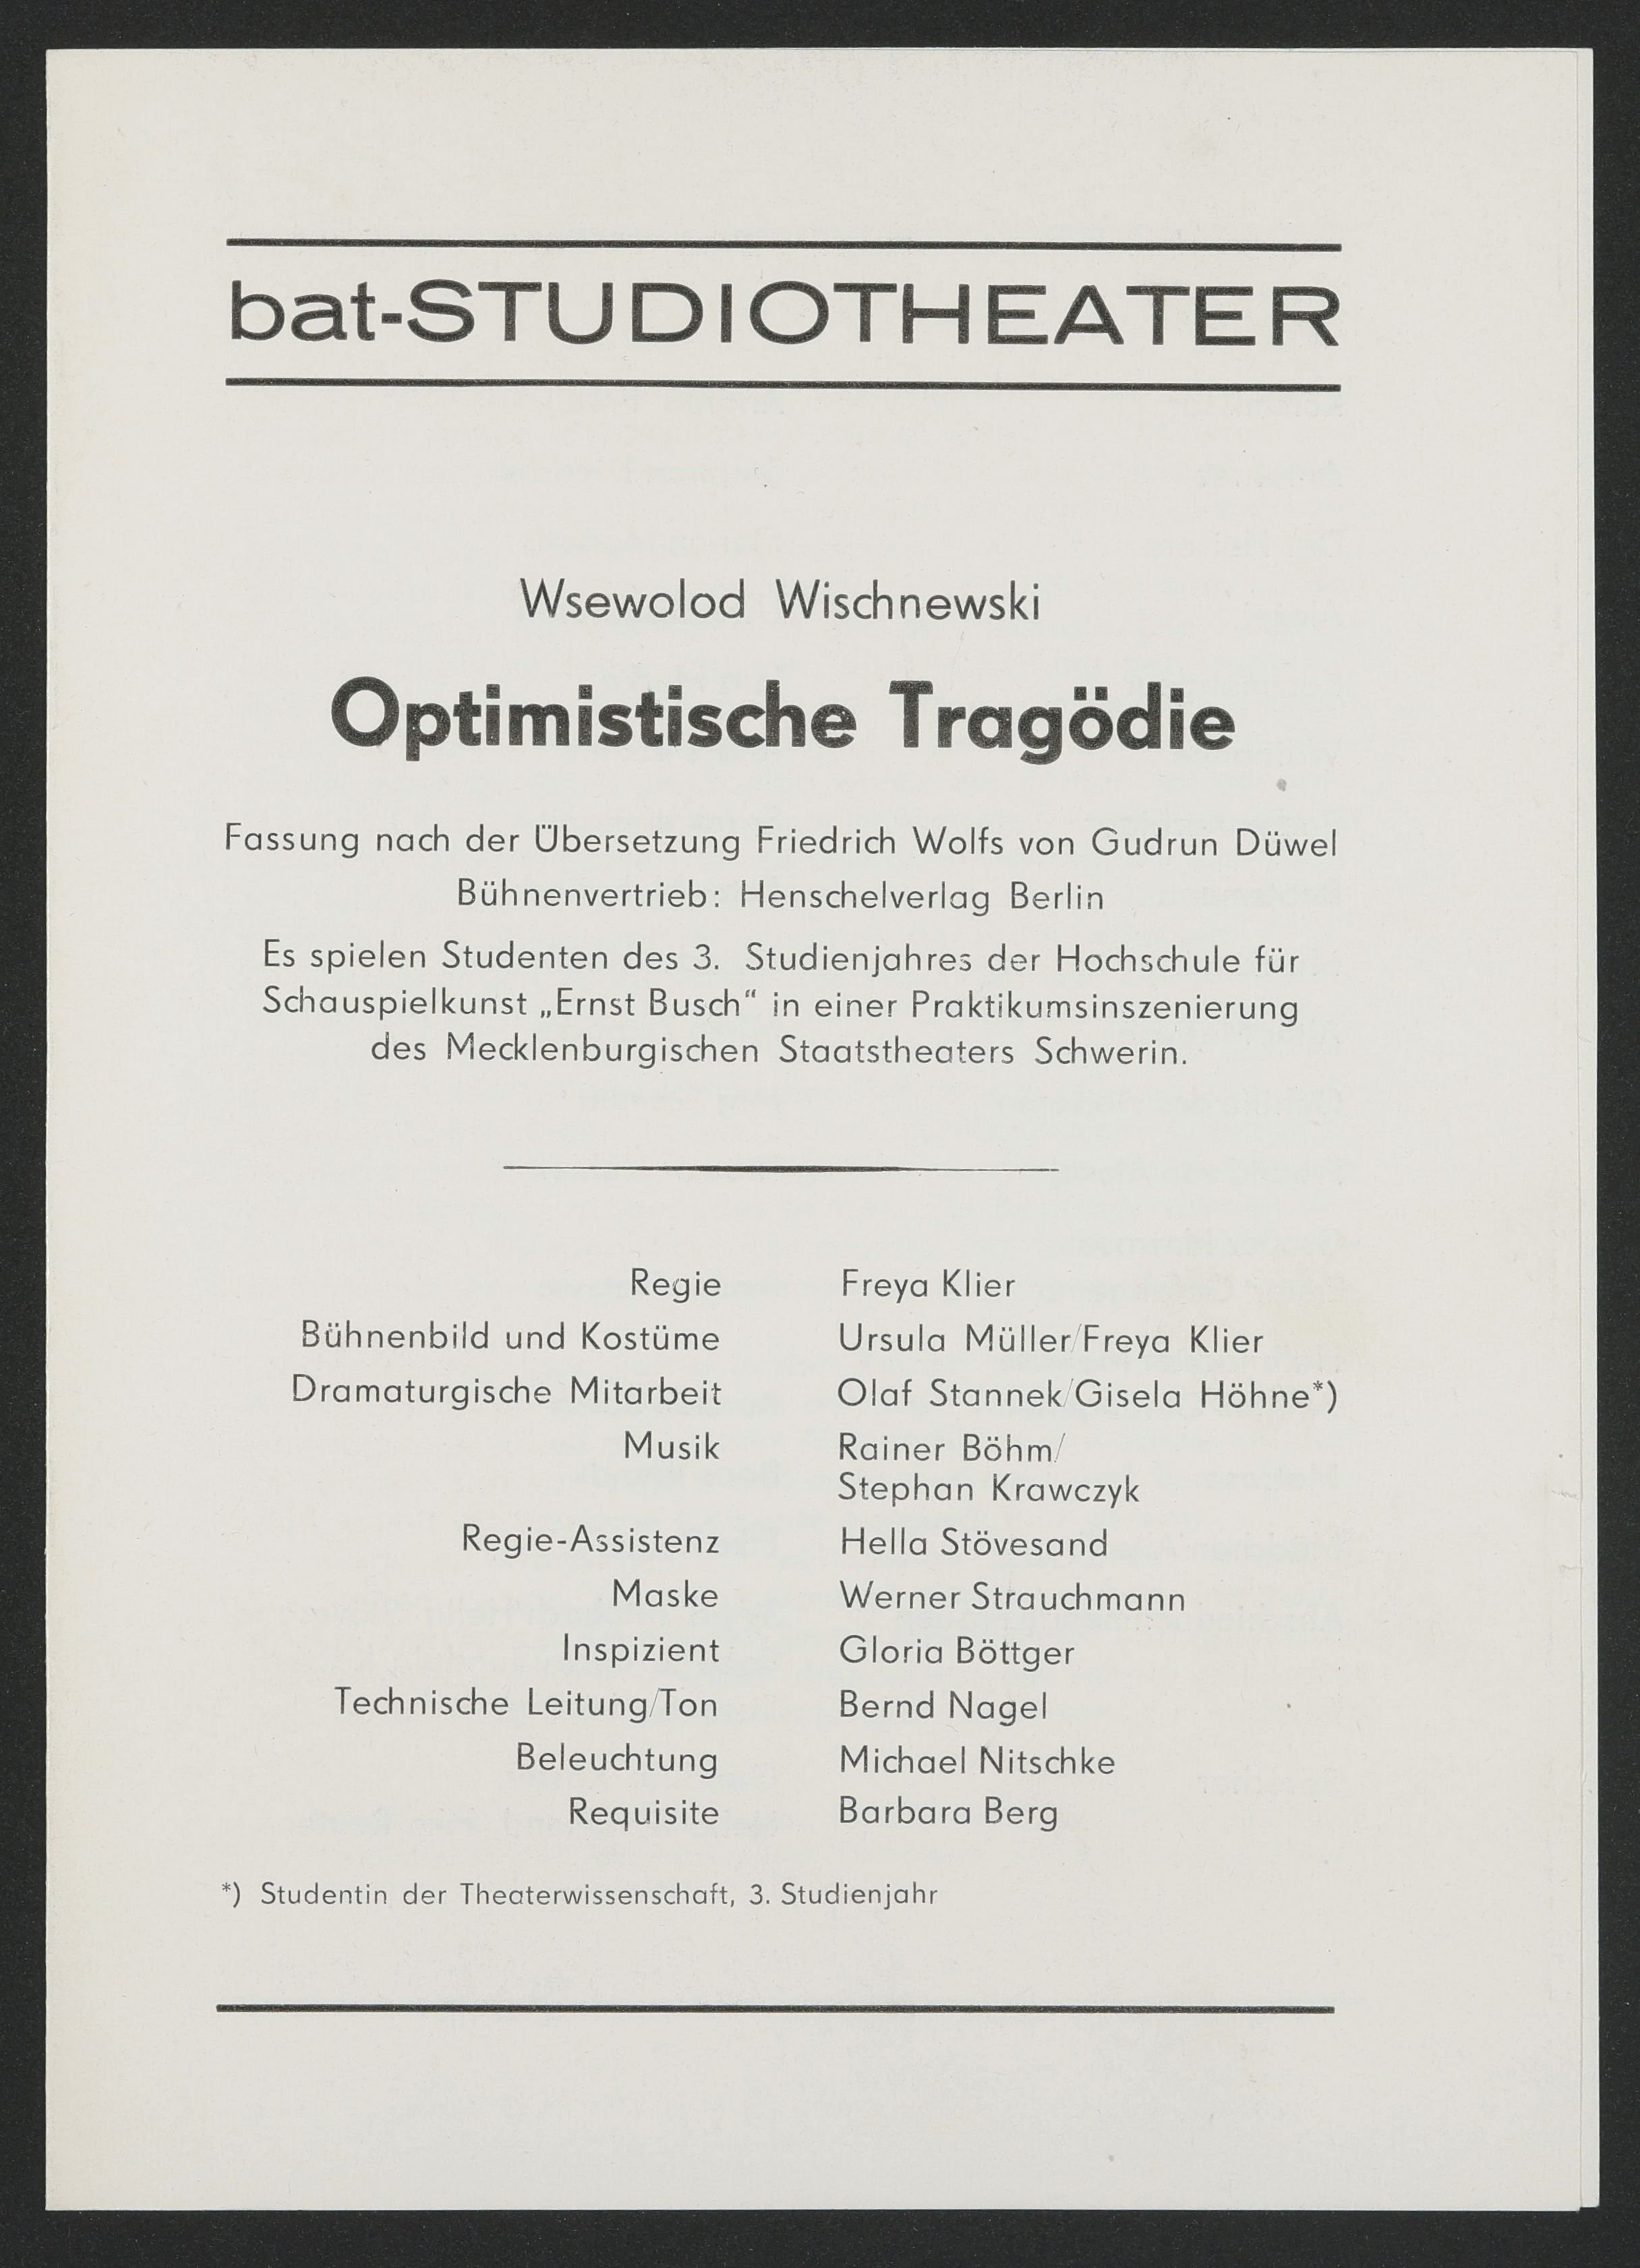 Programmheft zu "Optimistische Tragödie" am bat-Studiotheater 1985 (R: Freya Klier, Version 1) (Hochschule für Schauspielkunst Ernst Busch Berlin RR-F)